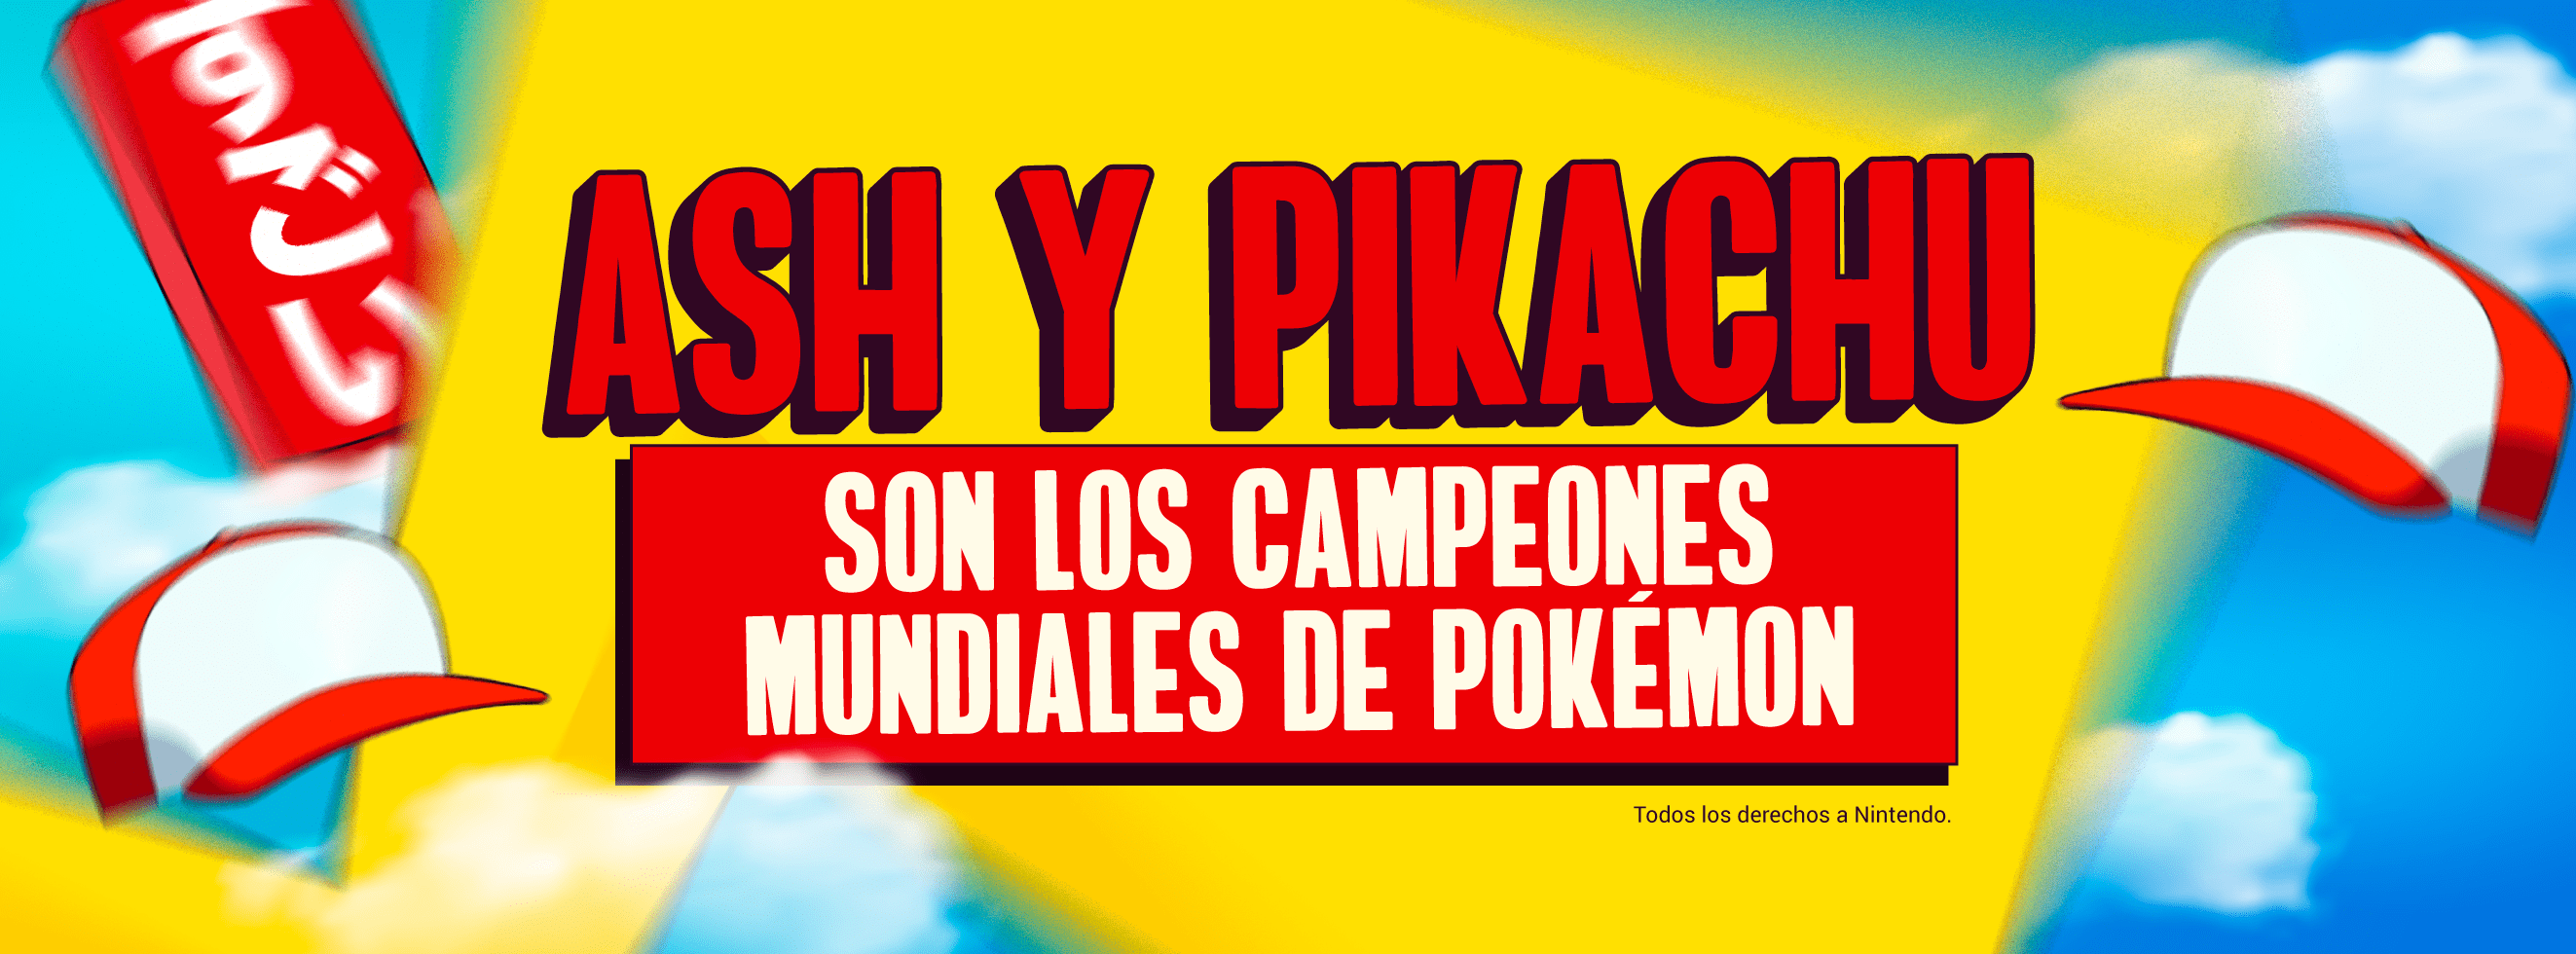 Ash y Pikachu son los campeones mundiales de Pokémon